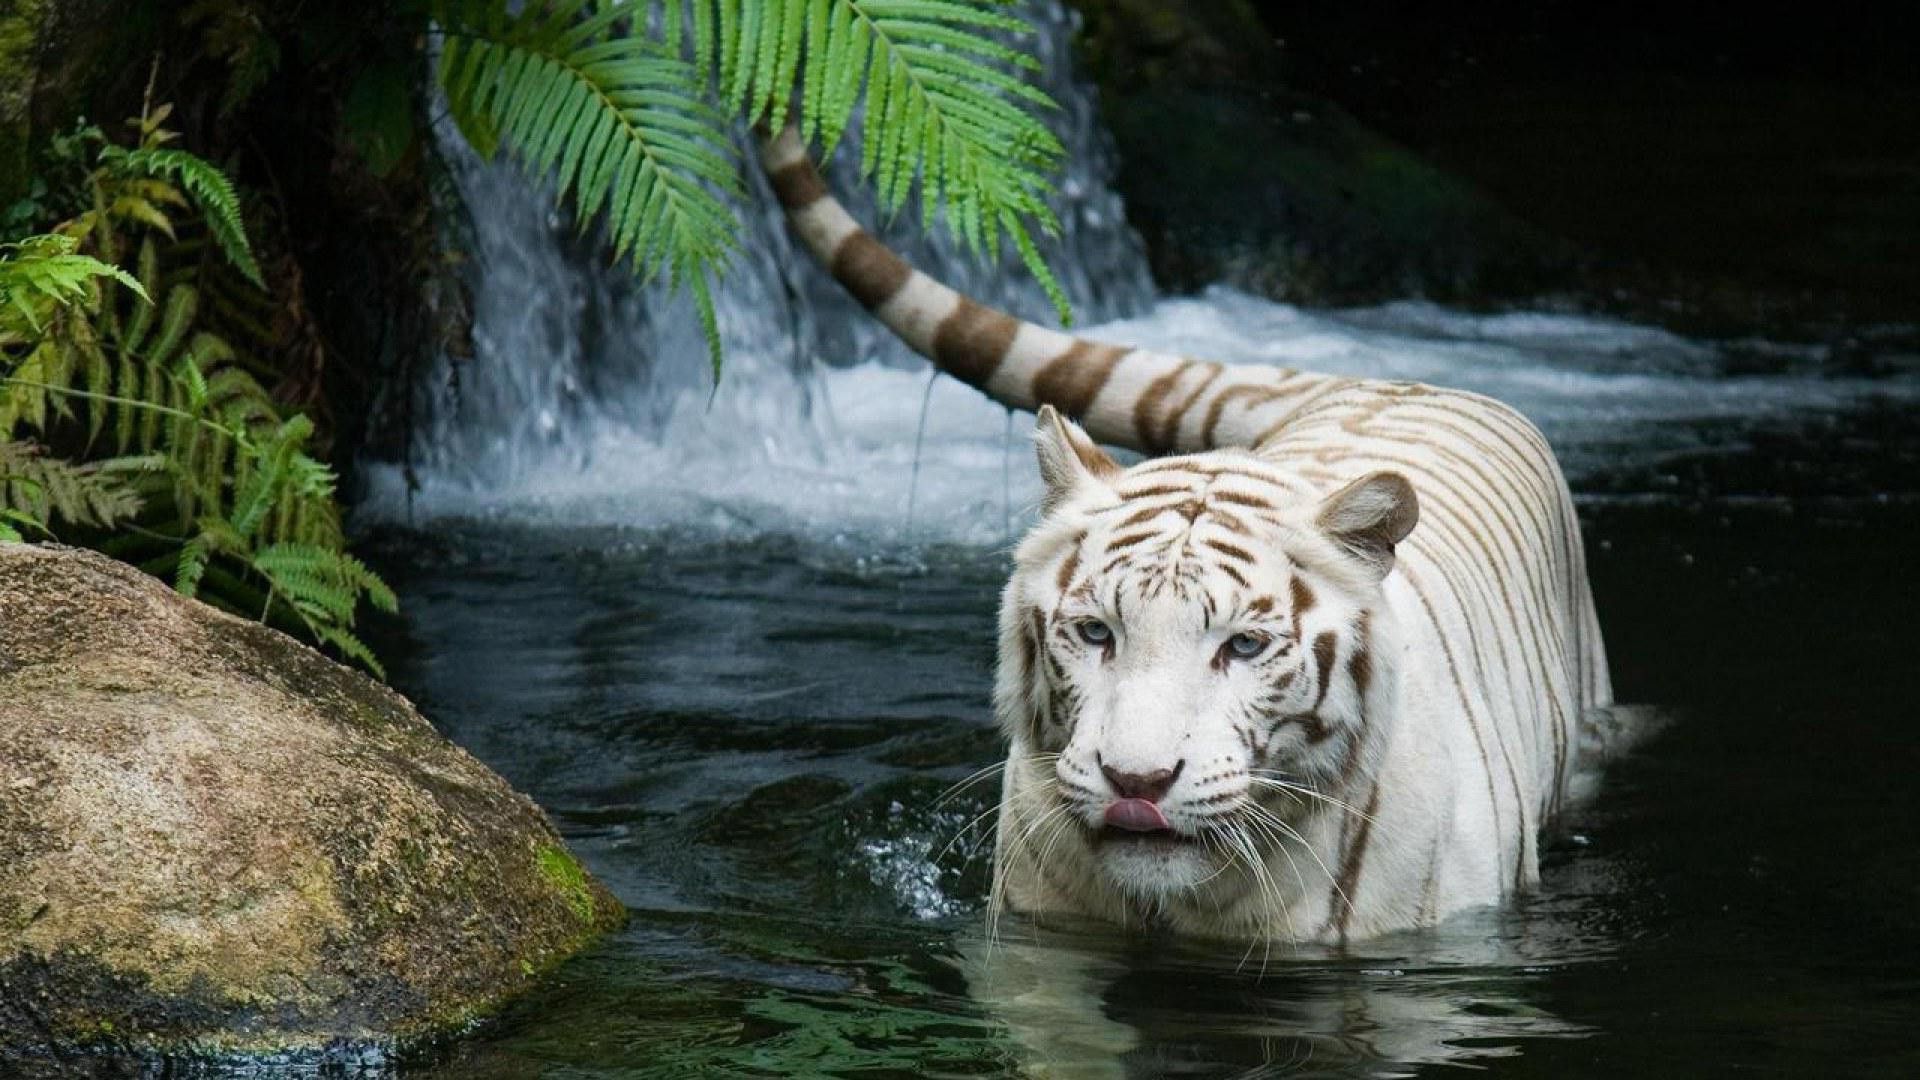 tiger background